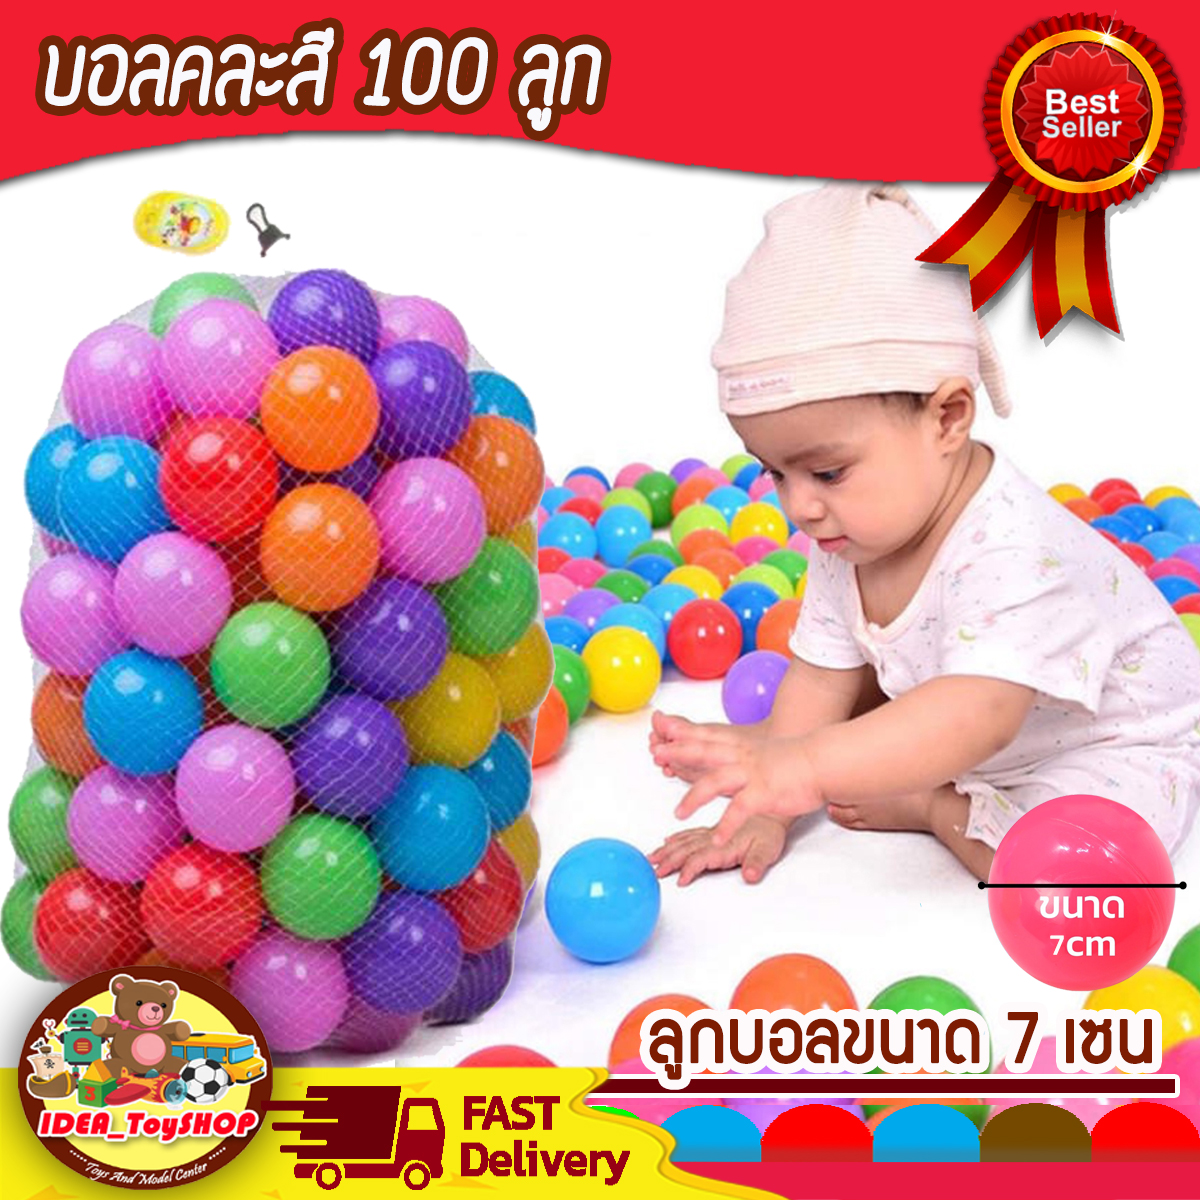 ลูกบอล 100 ลูก (คละสี) พร้อมตาข่ายใส่บอล ทำจากพลาสติกอย่างดี ปลอดภัย และสีไม่เป็นอันตรายต่อเด็ก เหมาะสำหรับไว้ใส่ในบ้านบอล / บ่อบอล/ คอกเด็ก/ หรือ ใส่ในอ่างน้ำ สระน้ำ ให้เด็กๆ ได้สนุกเพลิดเพลินมากขึ้น